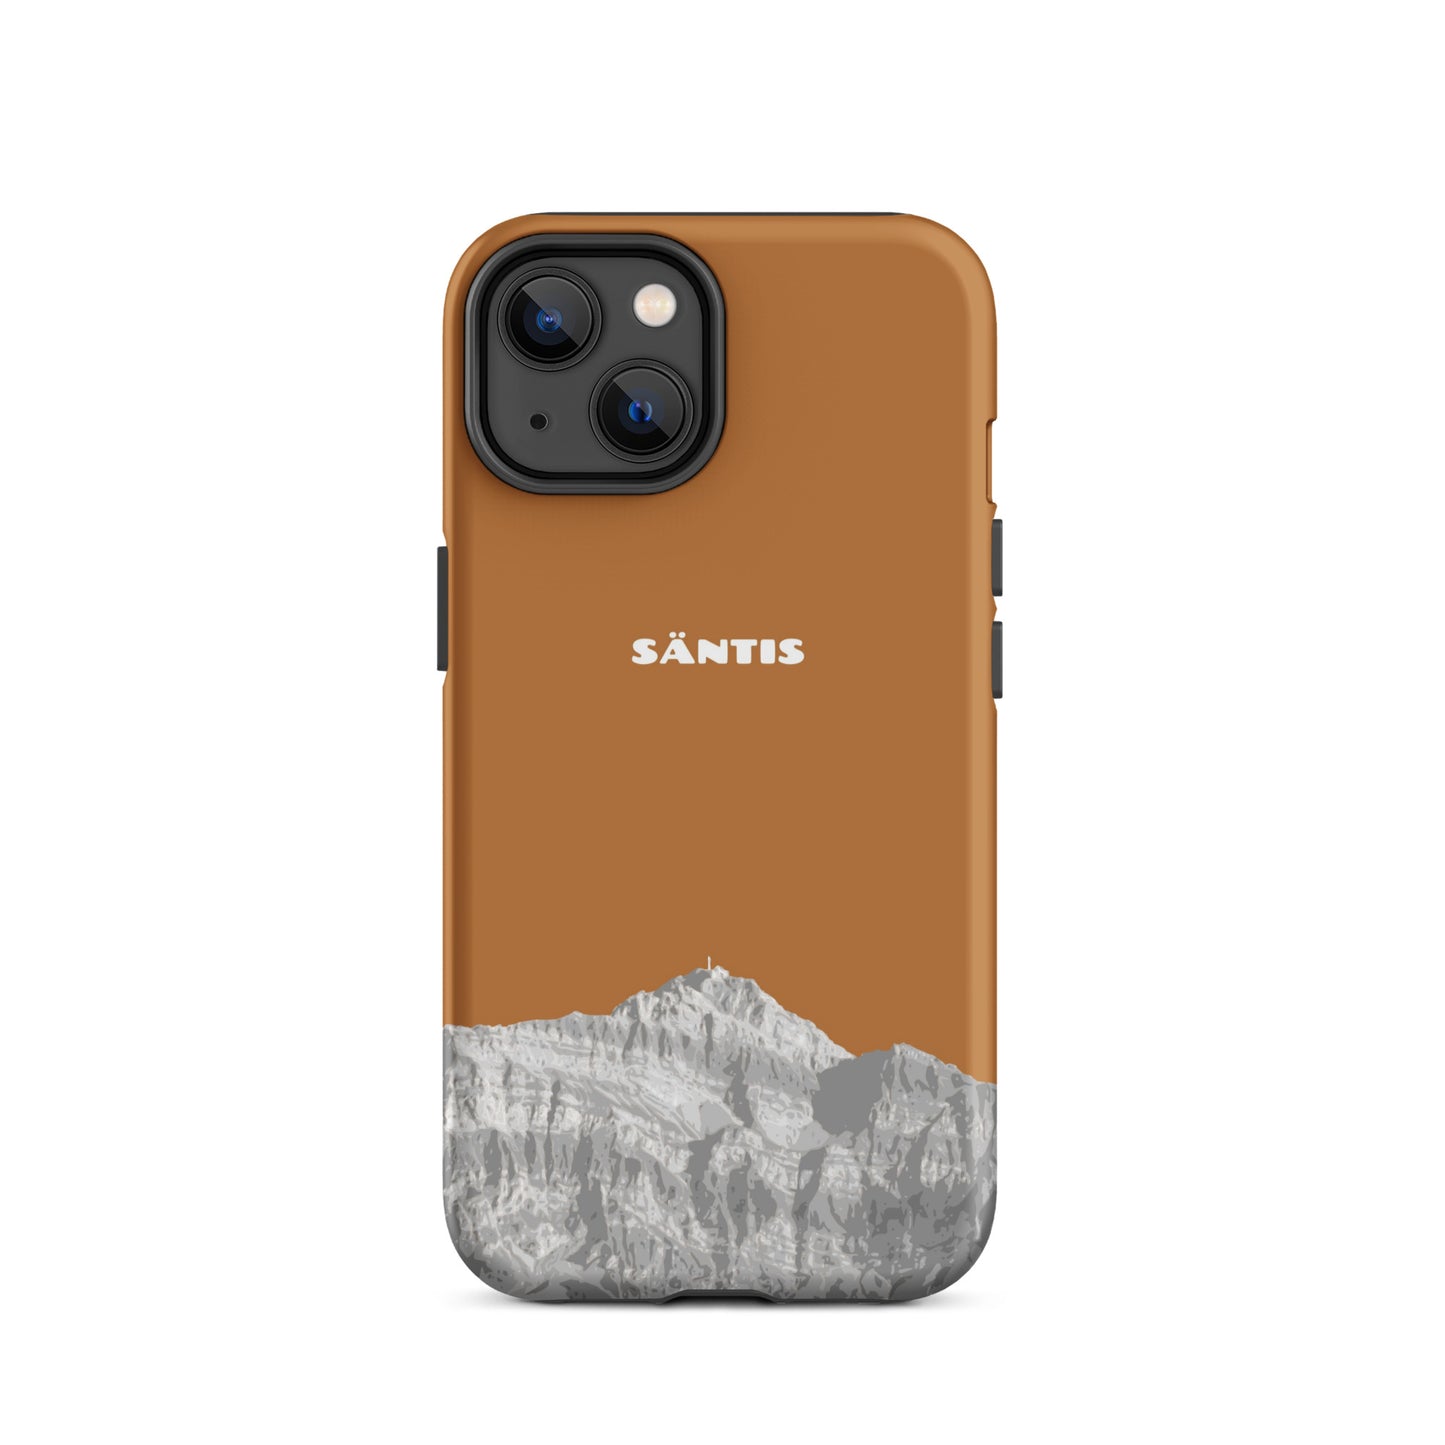 Hülle für das iPhone 14 von Apple in der Farbe Kupfer, dass den Säntis im Alpstein zeigt.